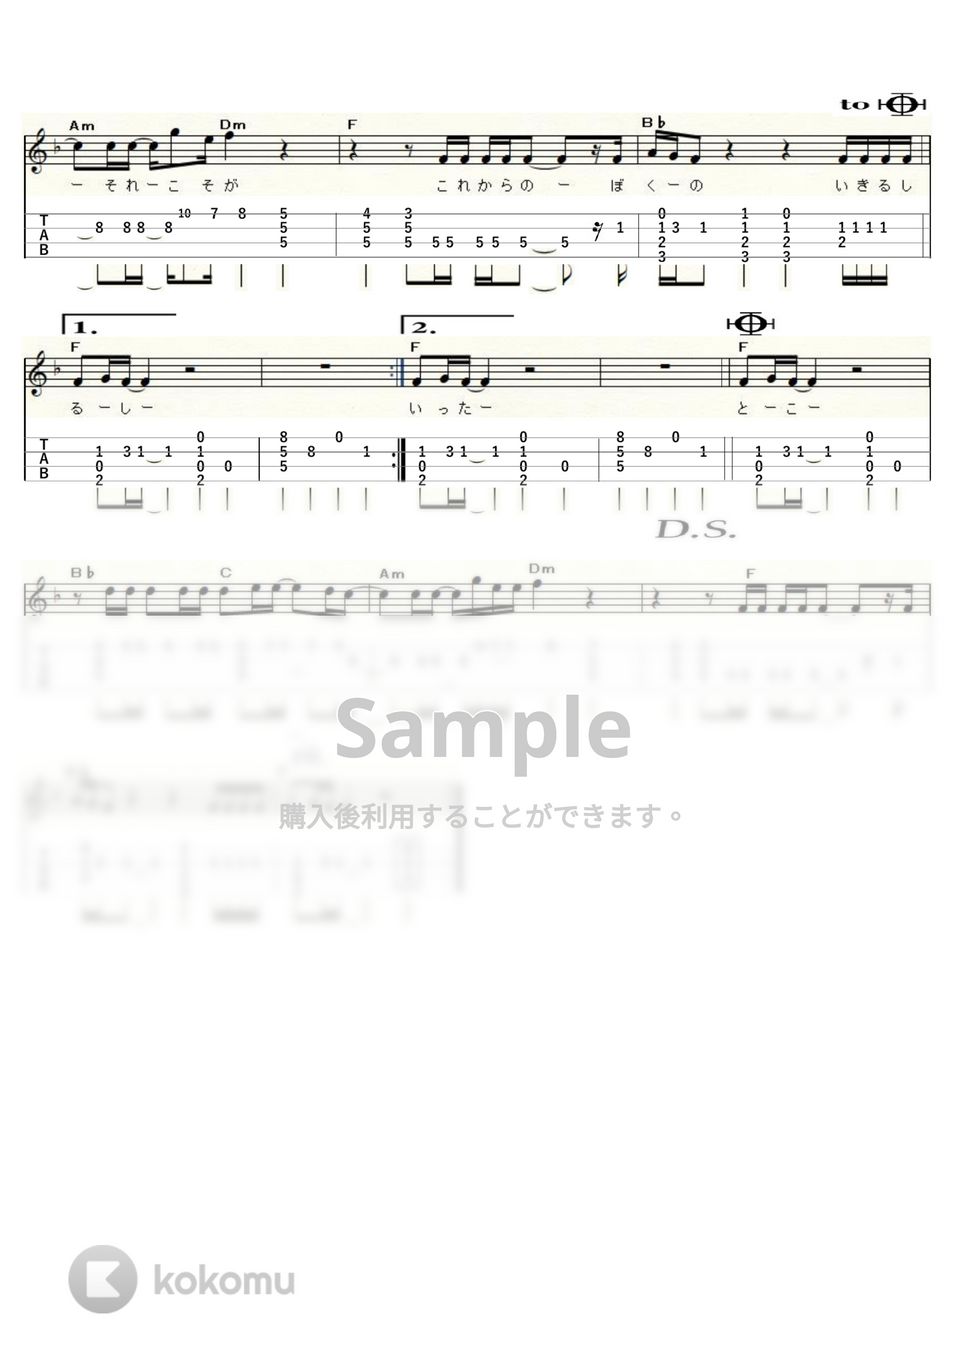 チューリップ - 青春の影 (High-G,Low-G) by ukulelepapa